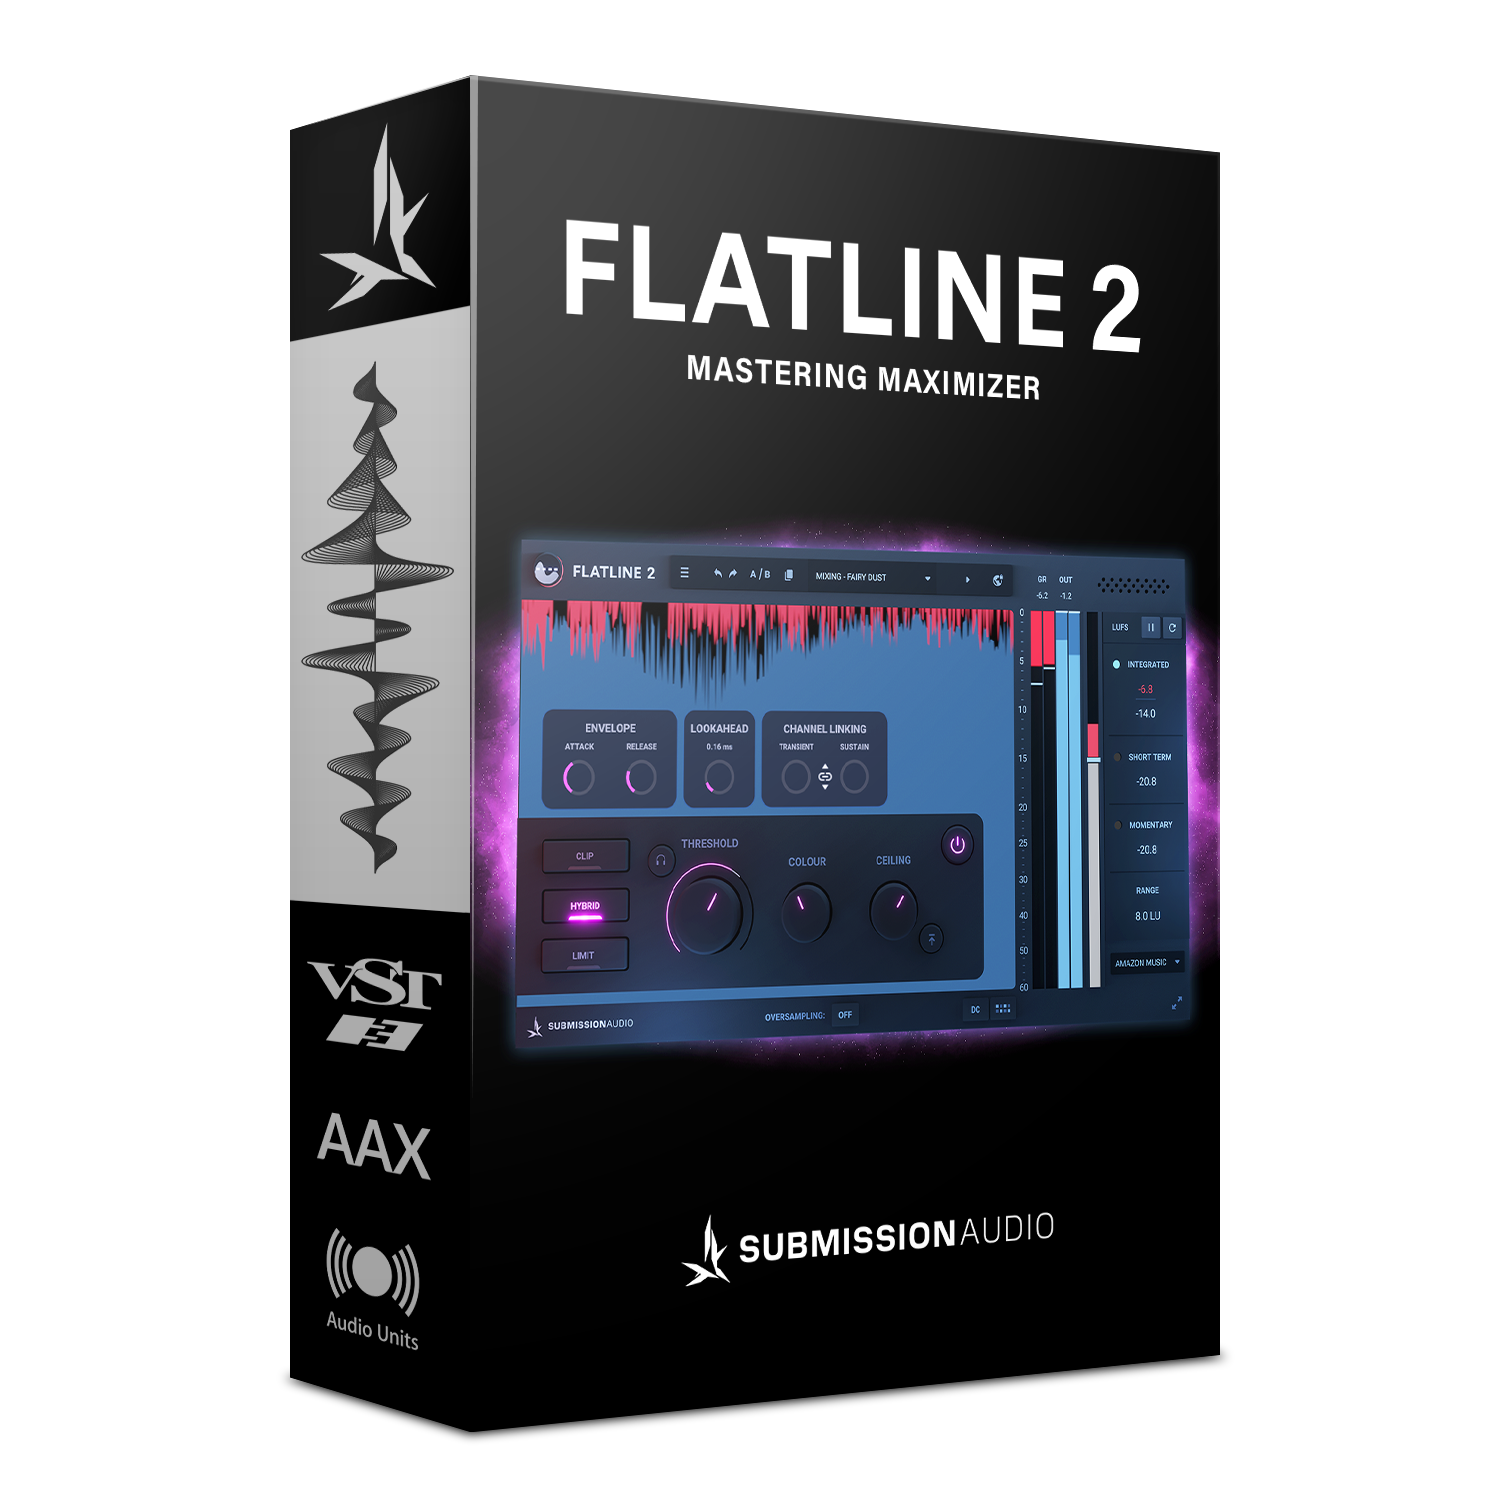 Flatline 2